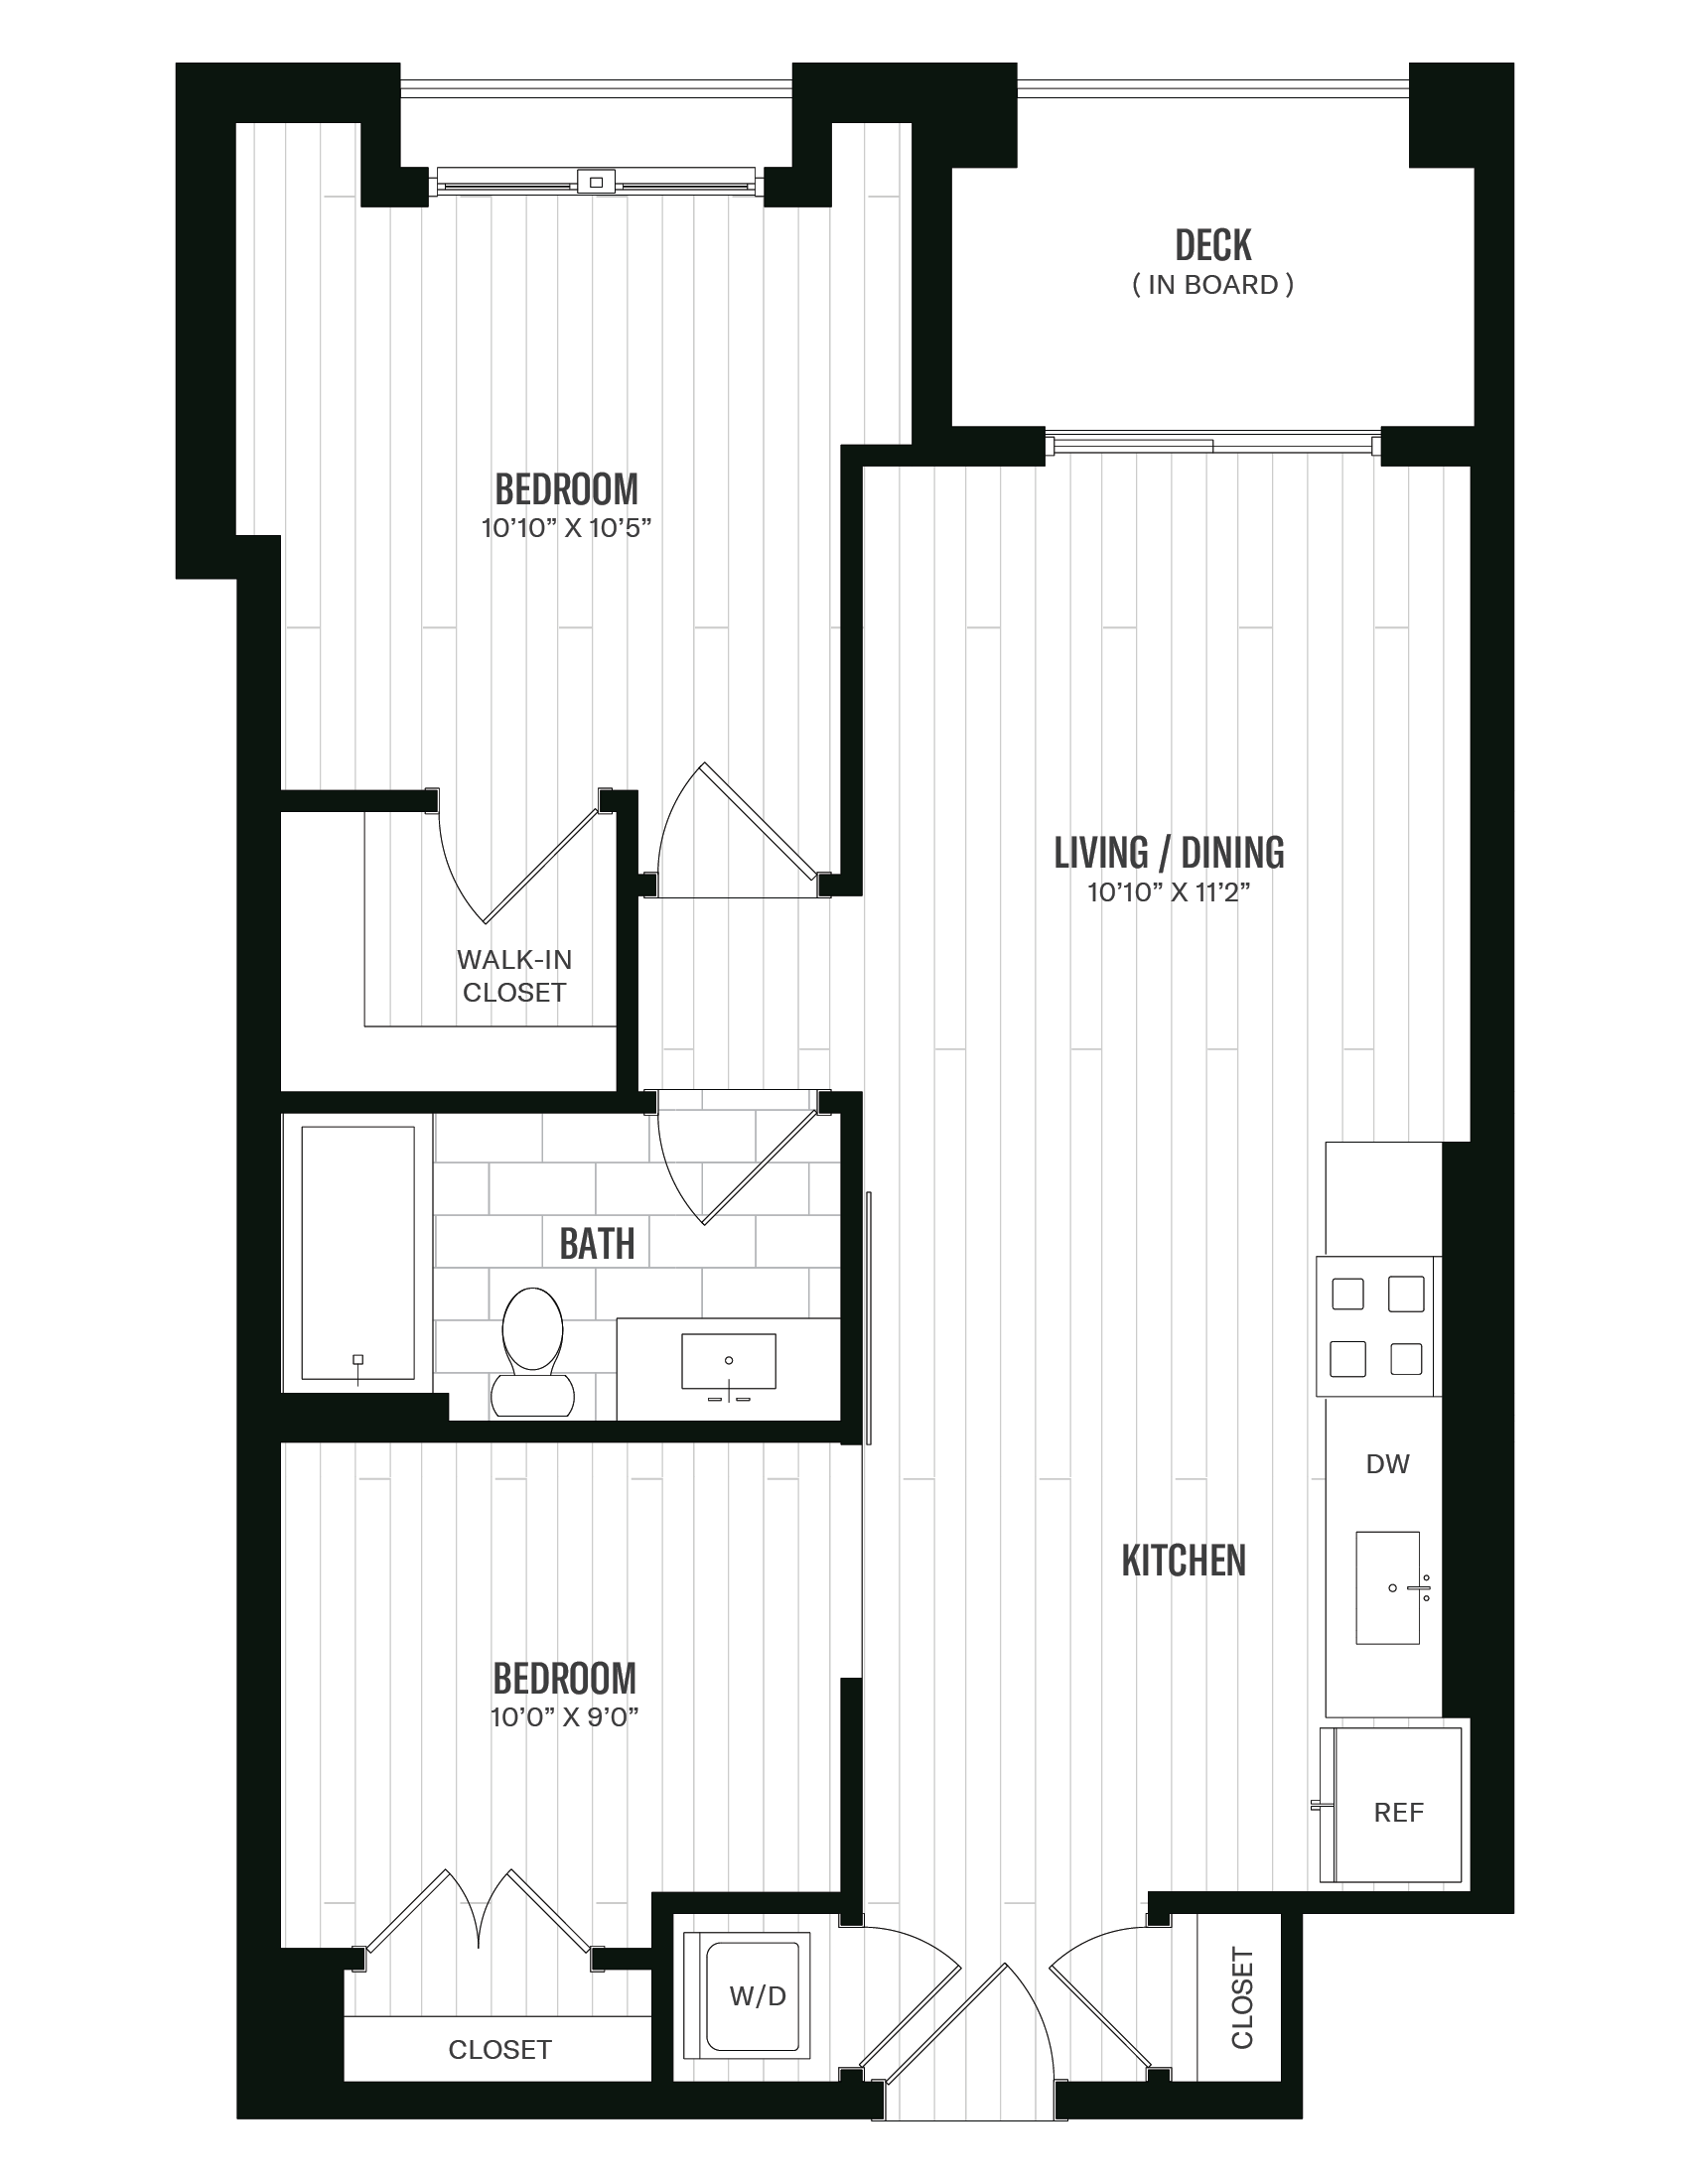 Floorplan image of unit 244